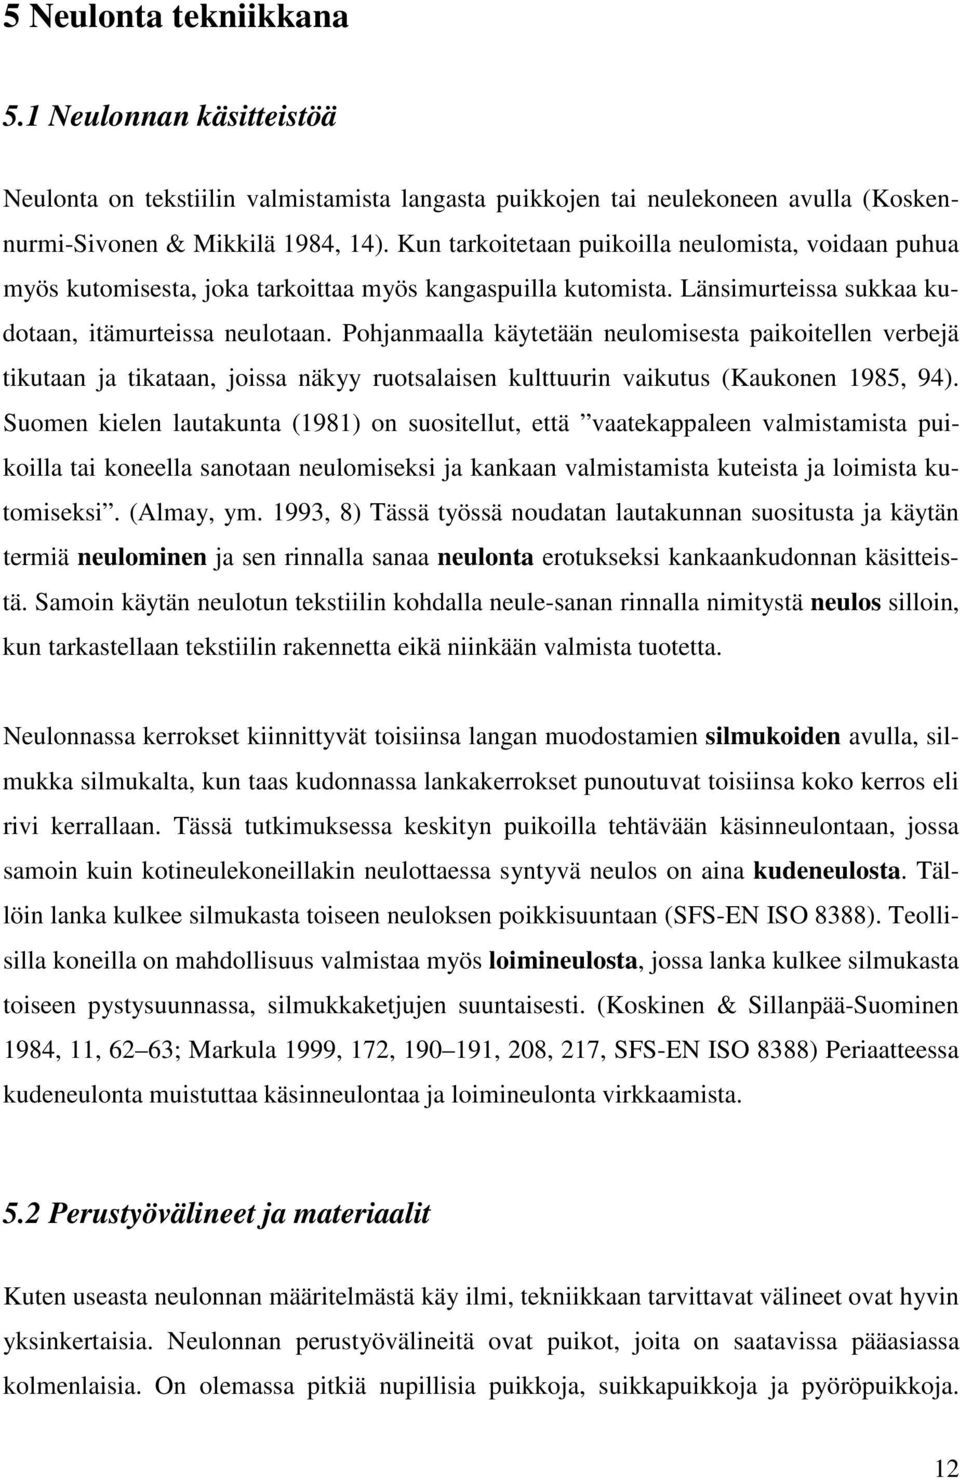 Pohjanmaalla käytetään neulomisesta paikoitellen verbejä tikutaan ja tikataan, joissa näkyy ruotsalaisen kulttuurin vaikutus (Kaukonen 1985, 94).